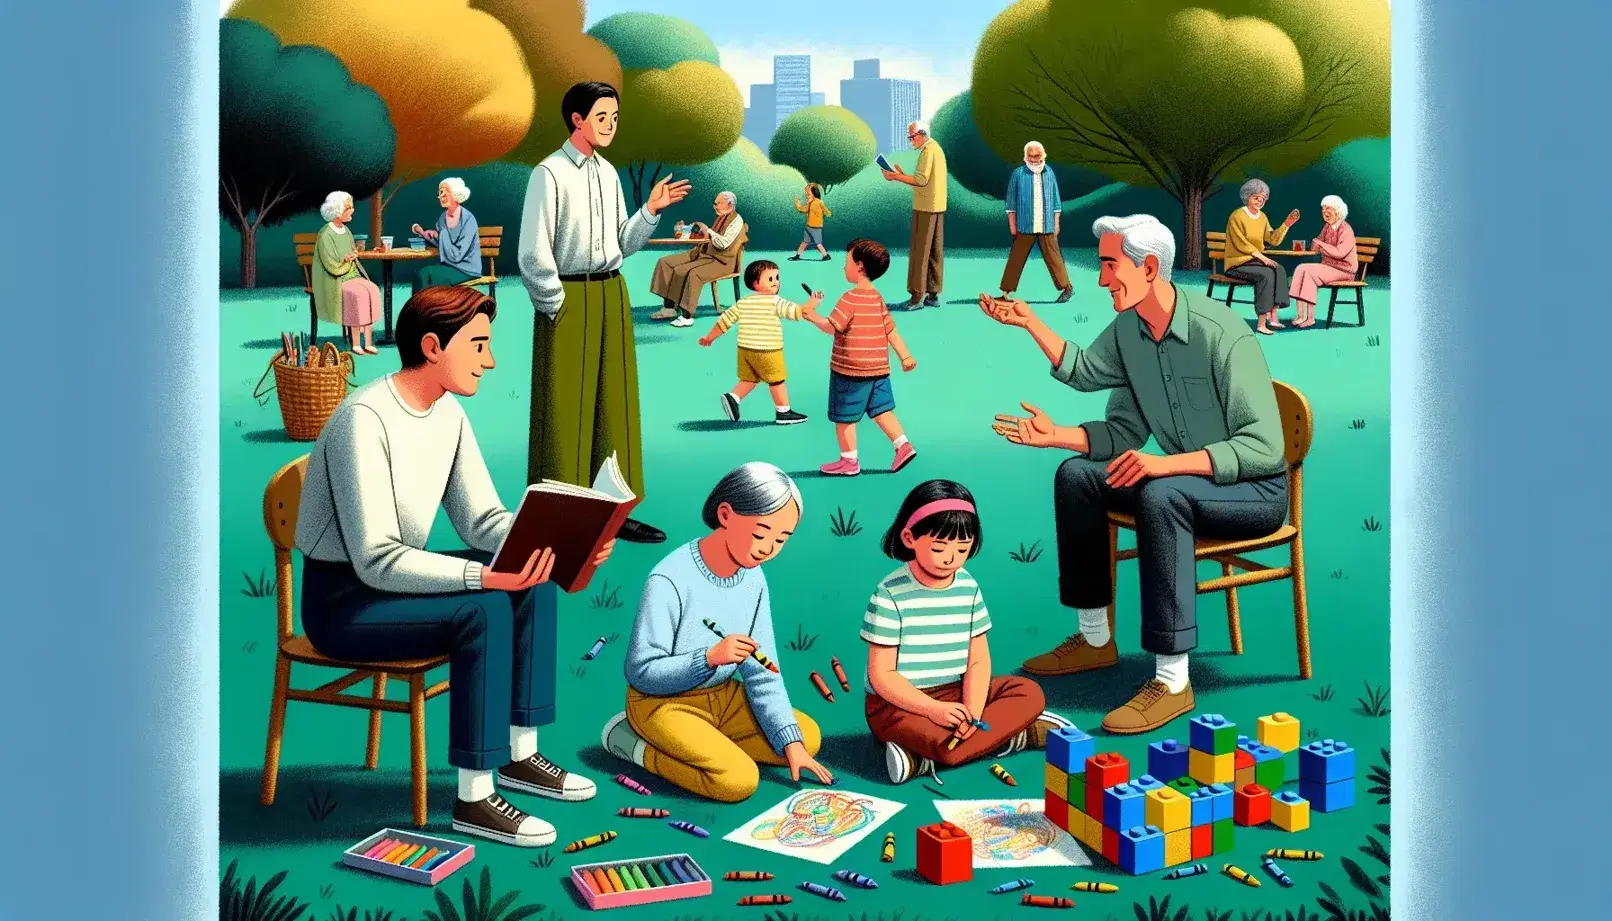 Grupo diverso de personas en parque soleado, niño jugando con bloques, niña dibujando, adolescente leyendo, adultos conversando y ancianos en banco.